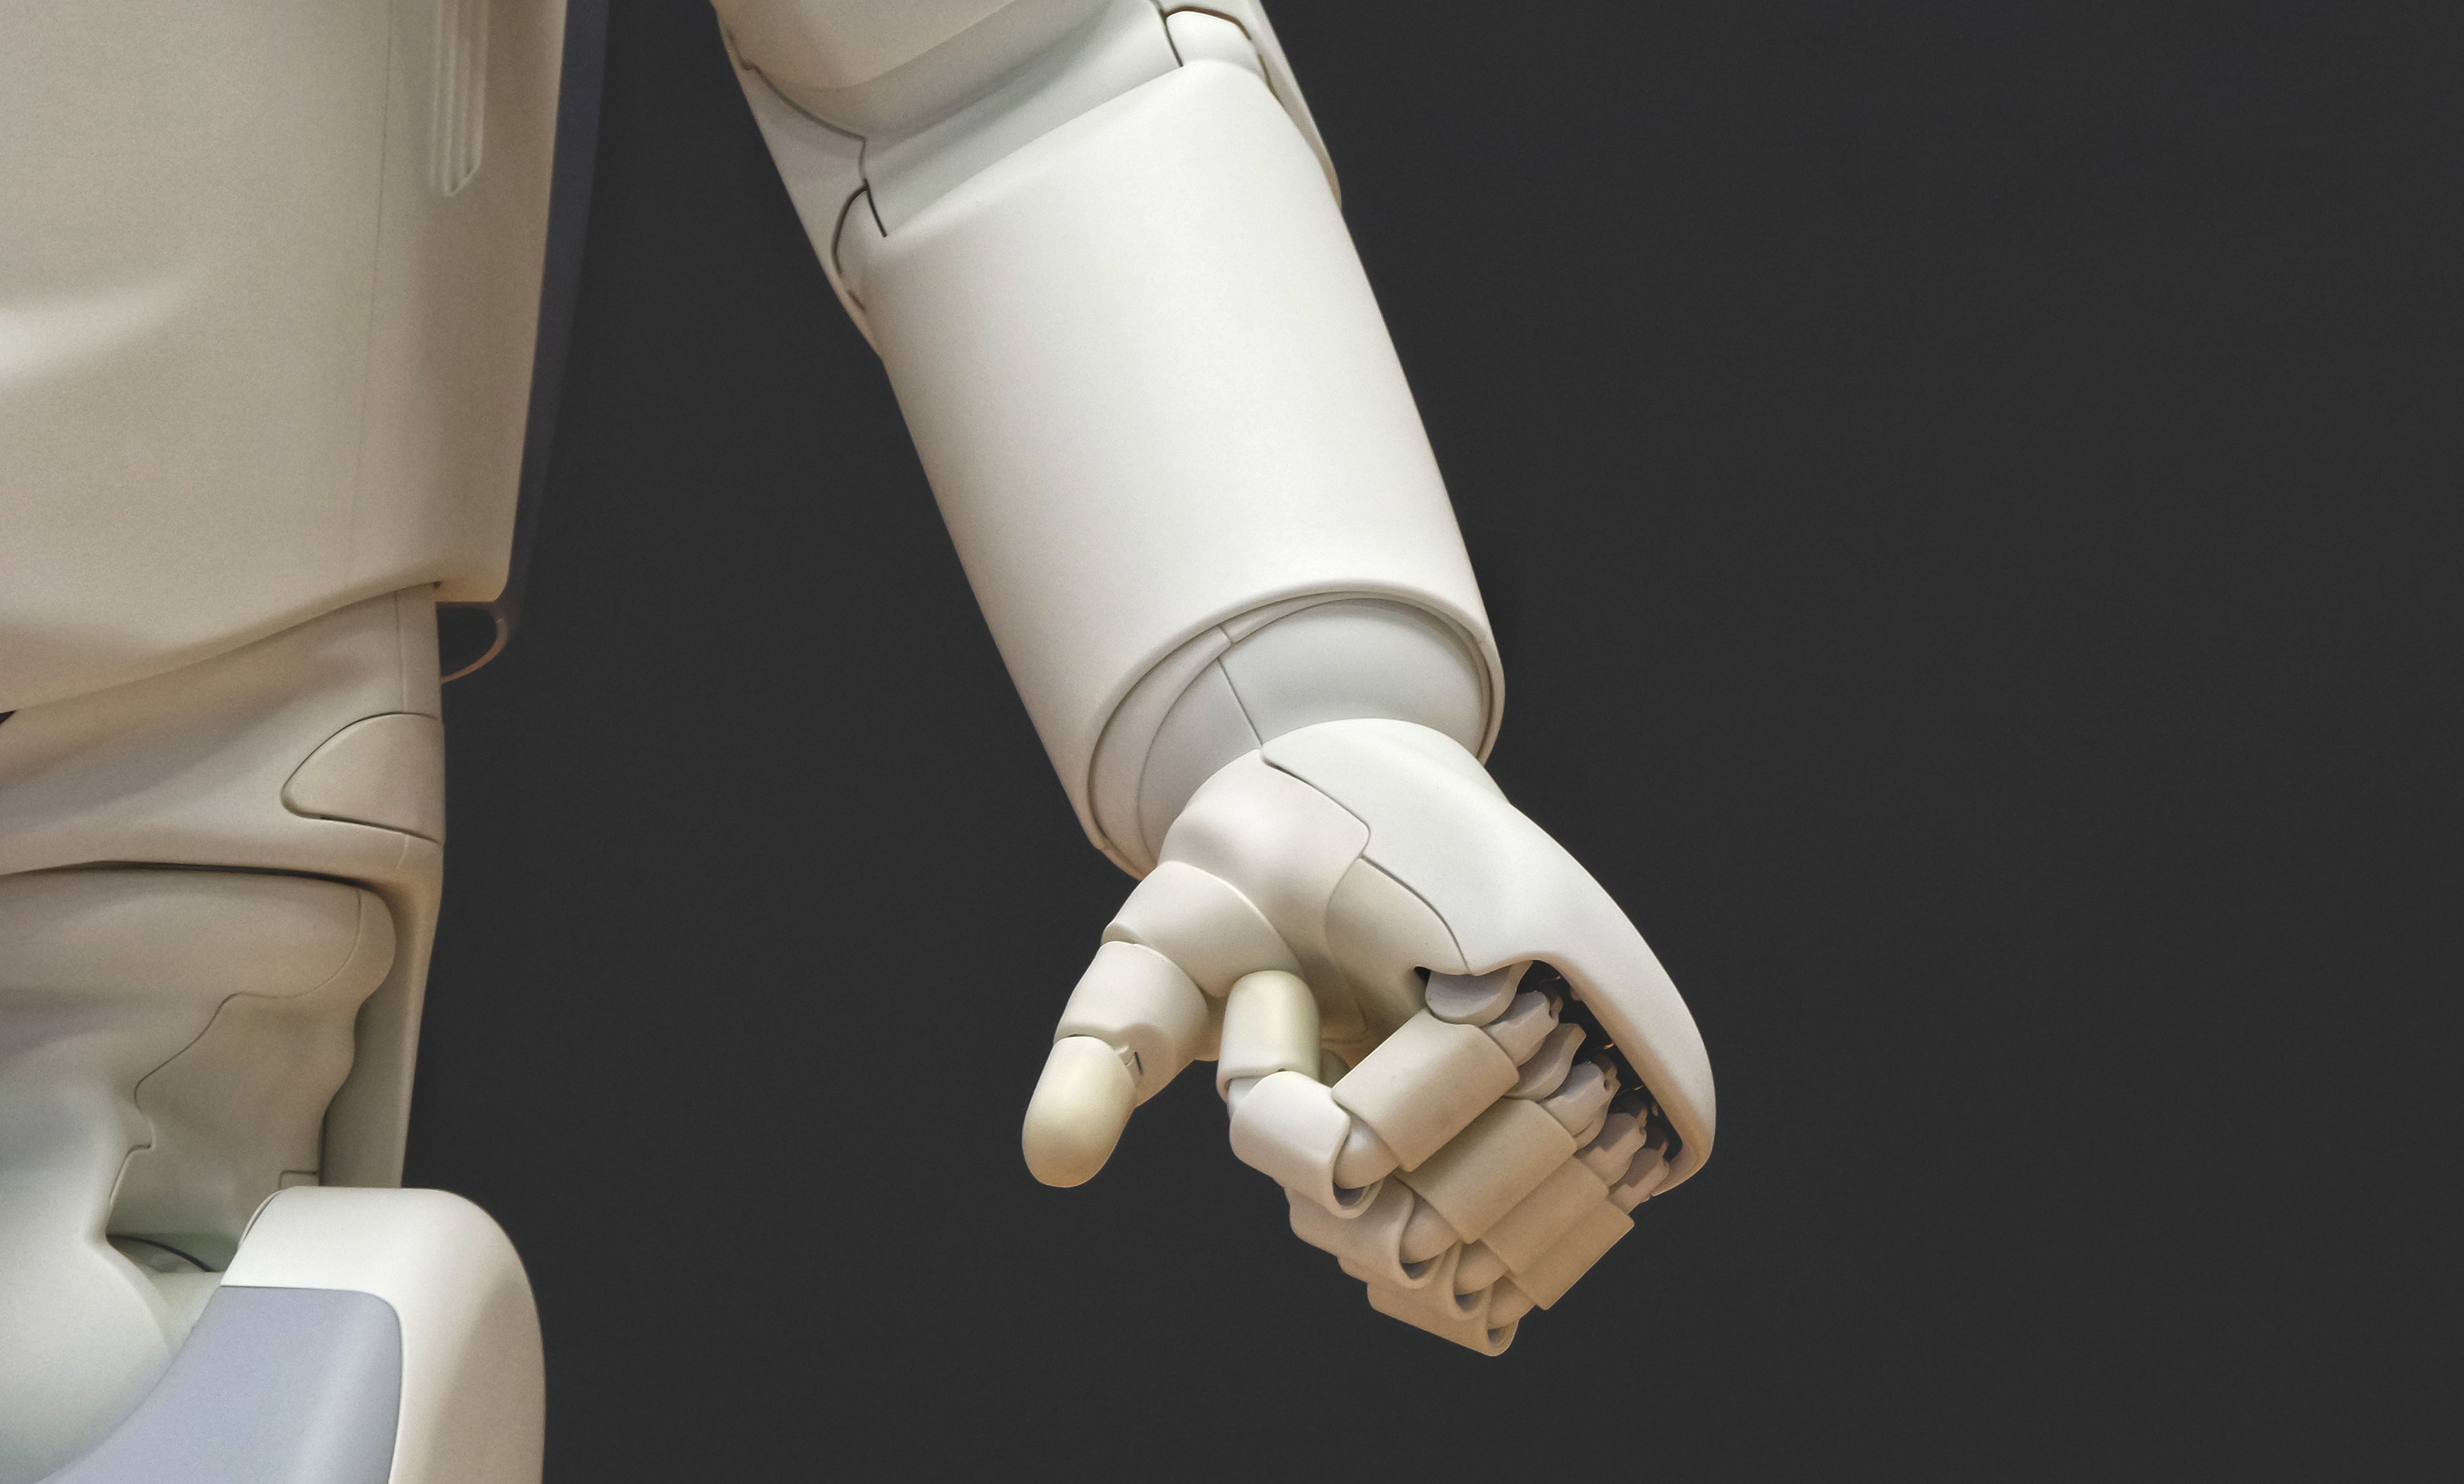 Roboţi cu inteligenţă artificială ar putea fi folosiţi în centrele de îngrijire